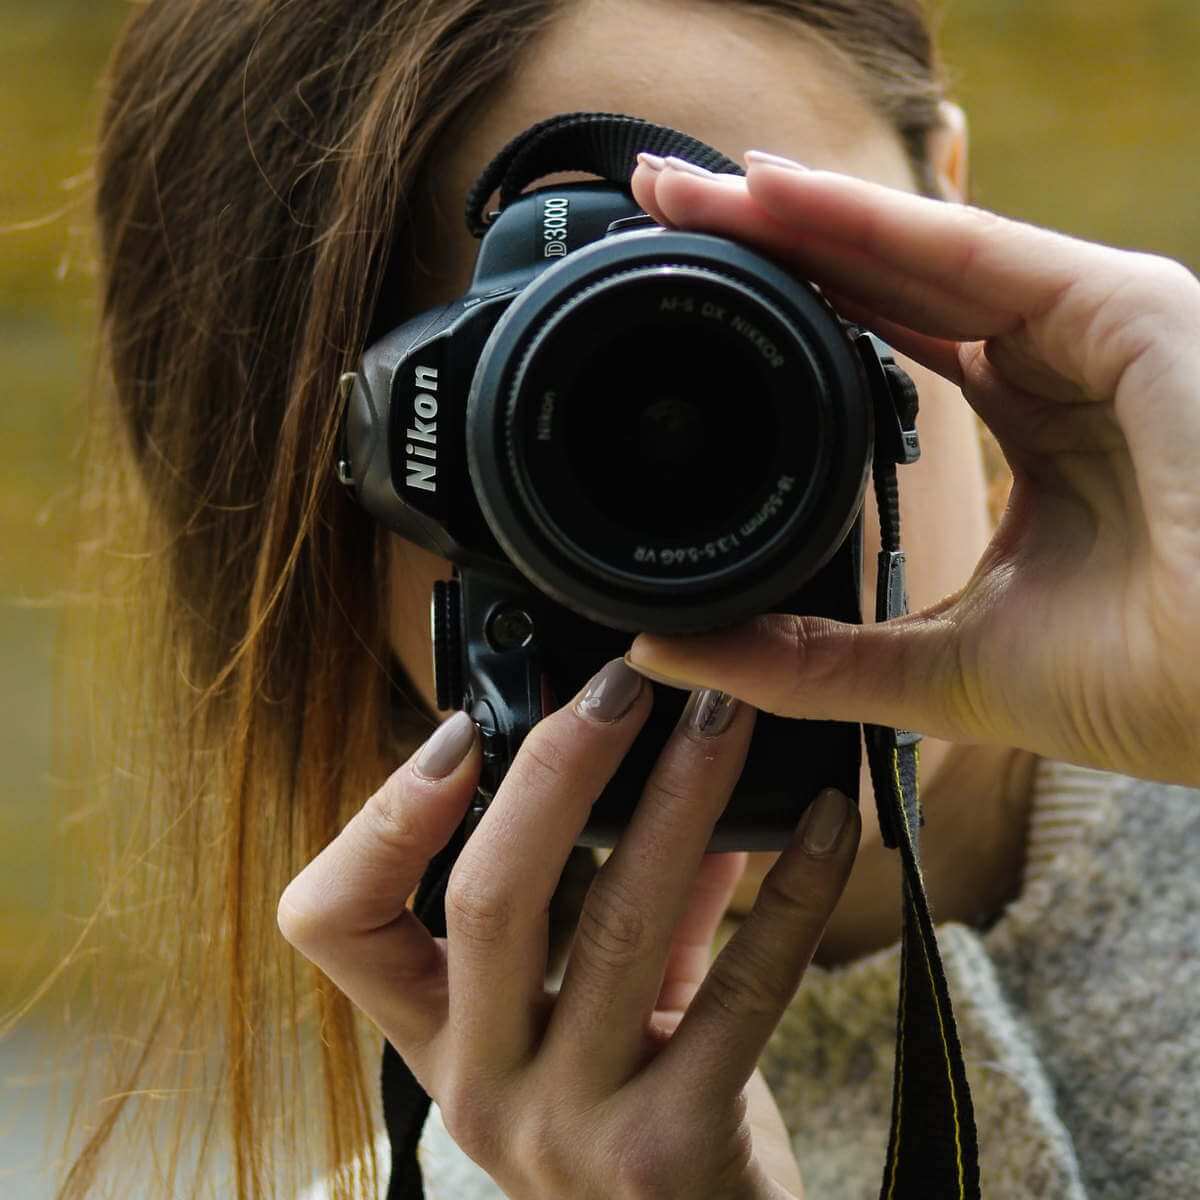 Nikon camera: Khám phá những khoảnh khắc tuyệt đẹp bằng Nikon camera! Với khả năng chụp ảnh siêu nét và màu sắc chân thật, sản phẩm này đem đến cho bạn những bức ảnh đẹp như tranh với độ phân giải cao. Điều đặc biệt, Nikon camera còn được thiết kế nhỏ gọn, dễ dàng mang theo bên mình để bắt lấy mọi thứ xung quanh.